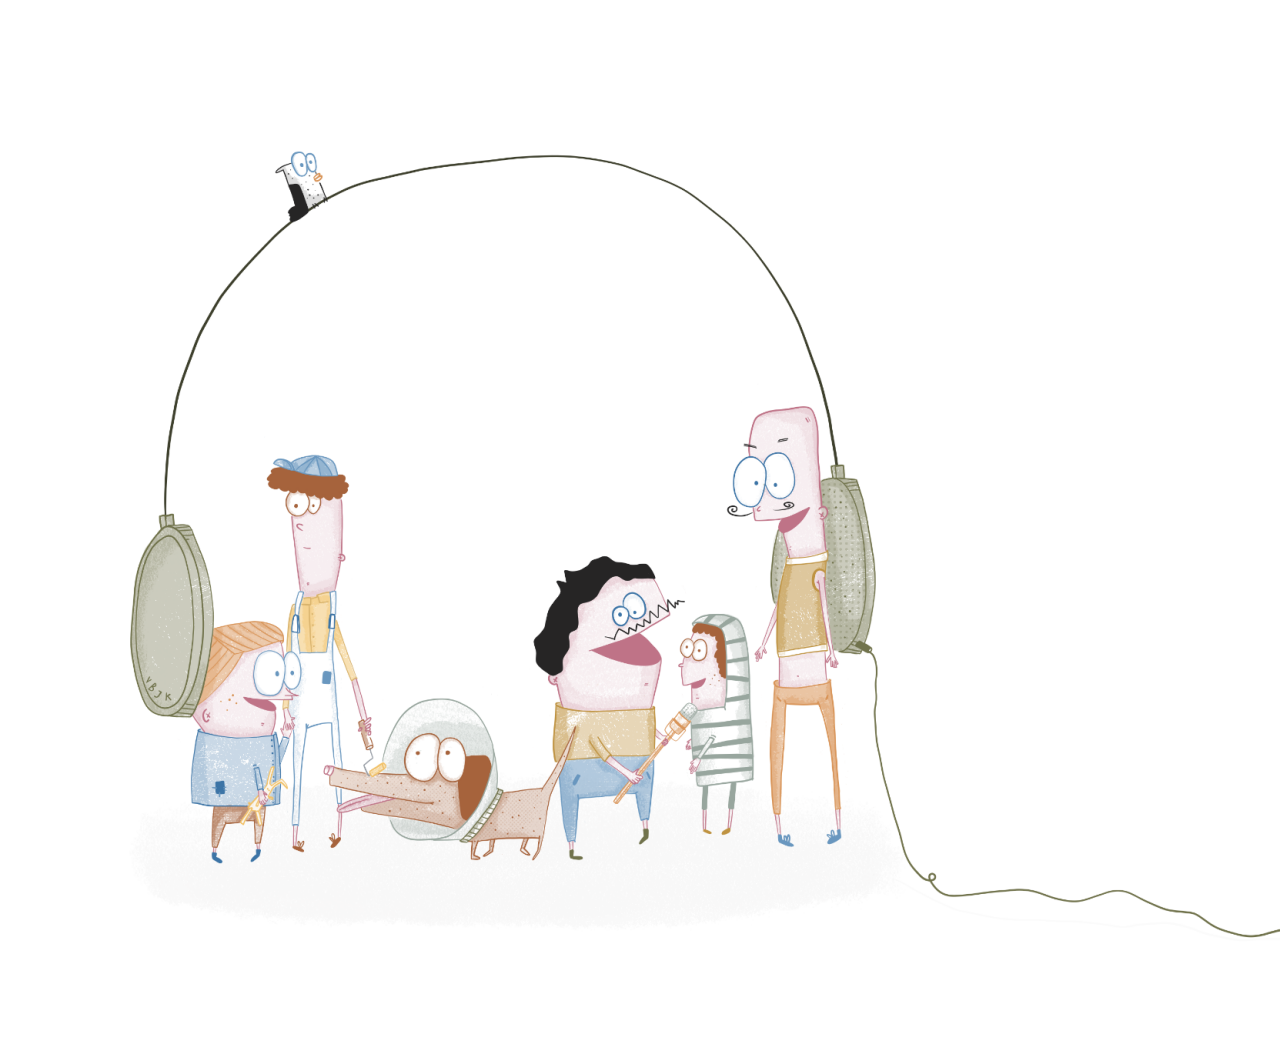 Trampoline - Volwassenen en kinderen met hoofdtelefoon over hen heen